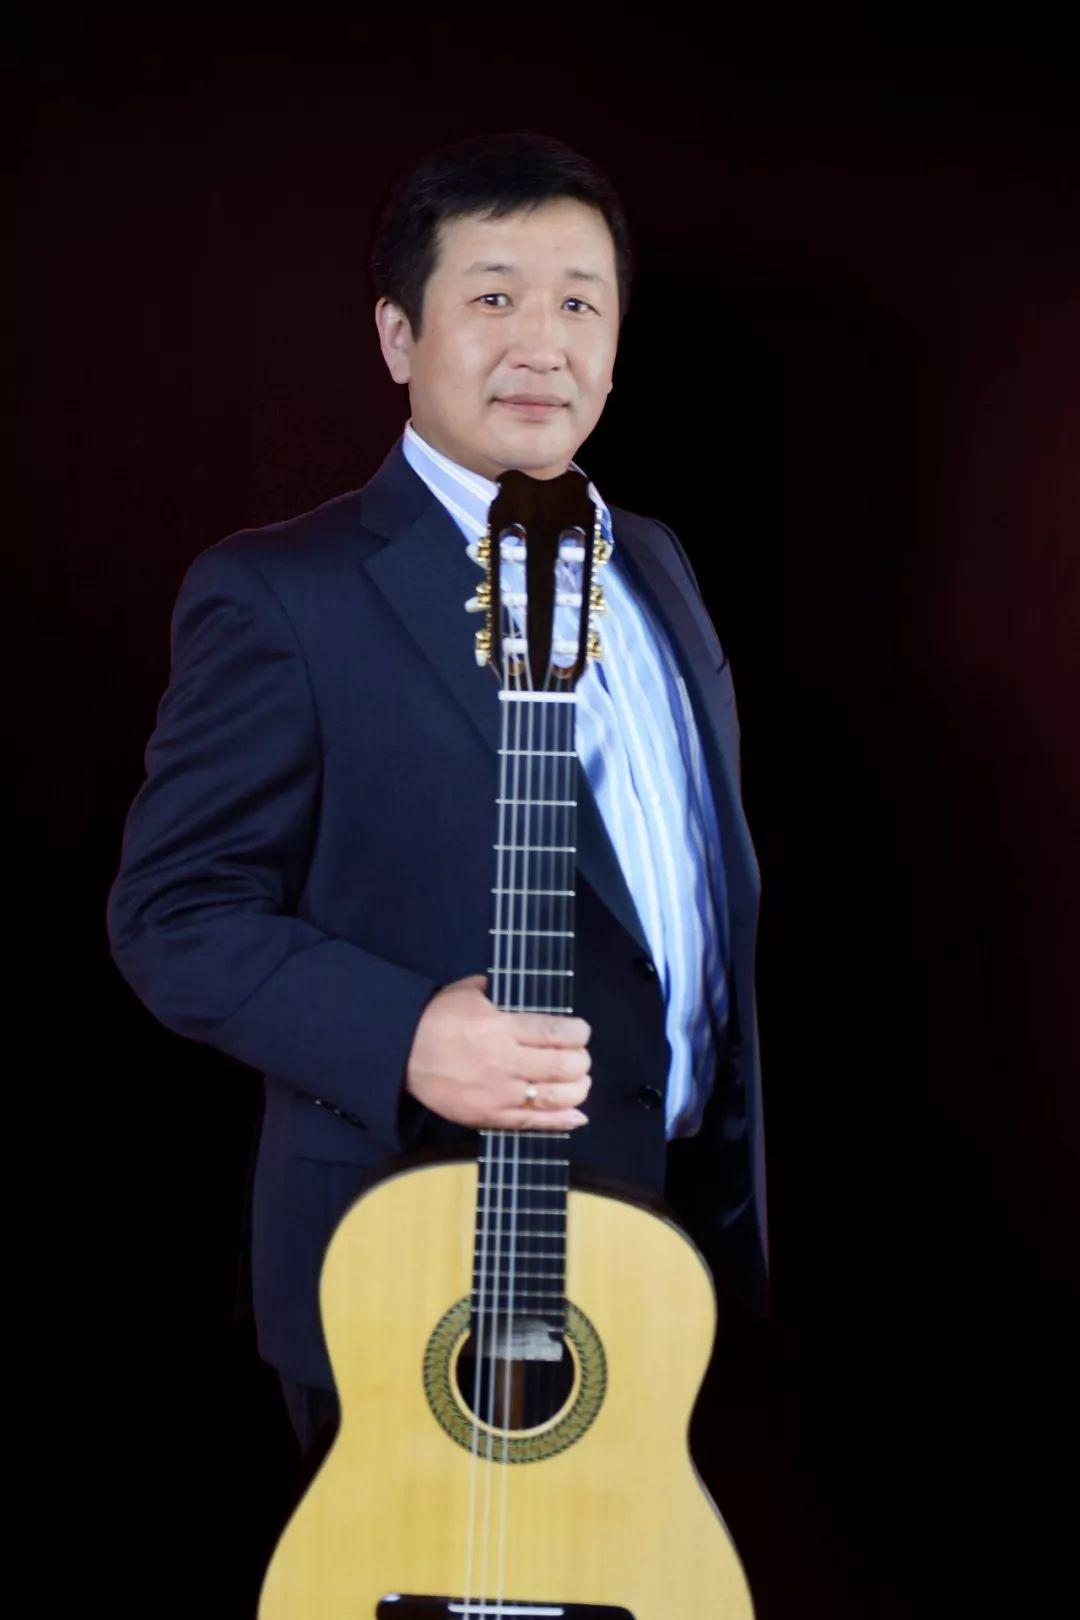 青岛国际吉他艺术节名家 之 黄文涛